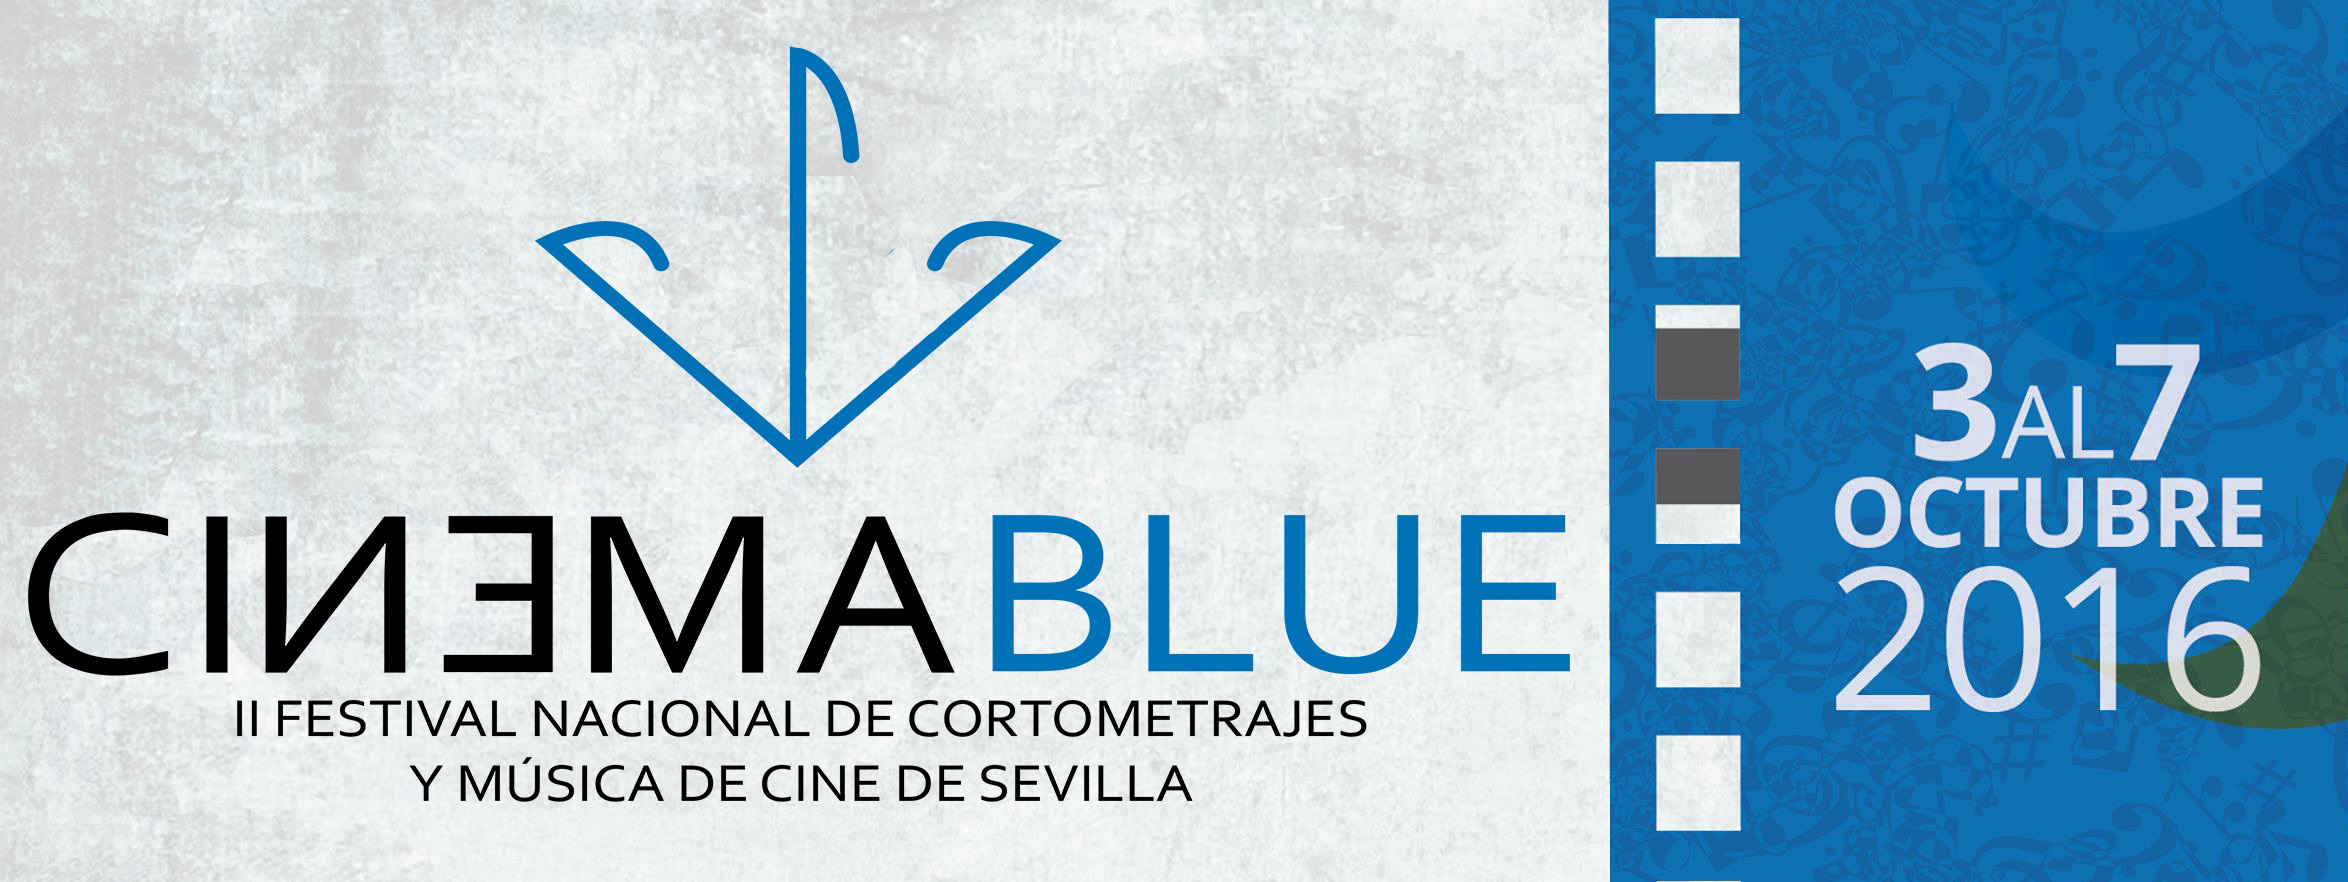 cinemablue-logo-2016